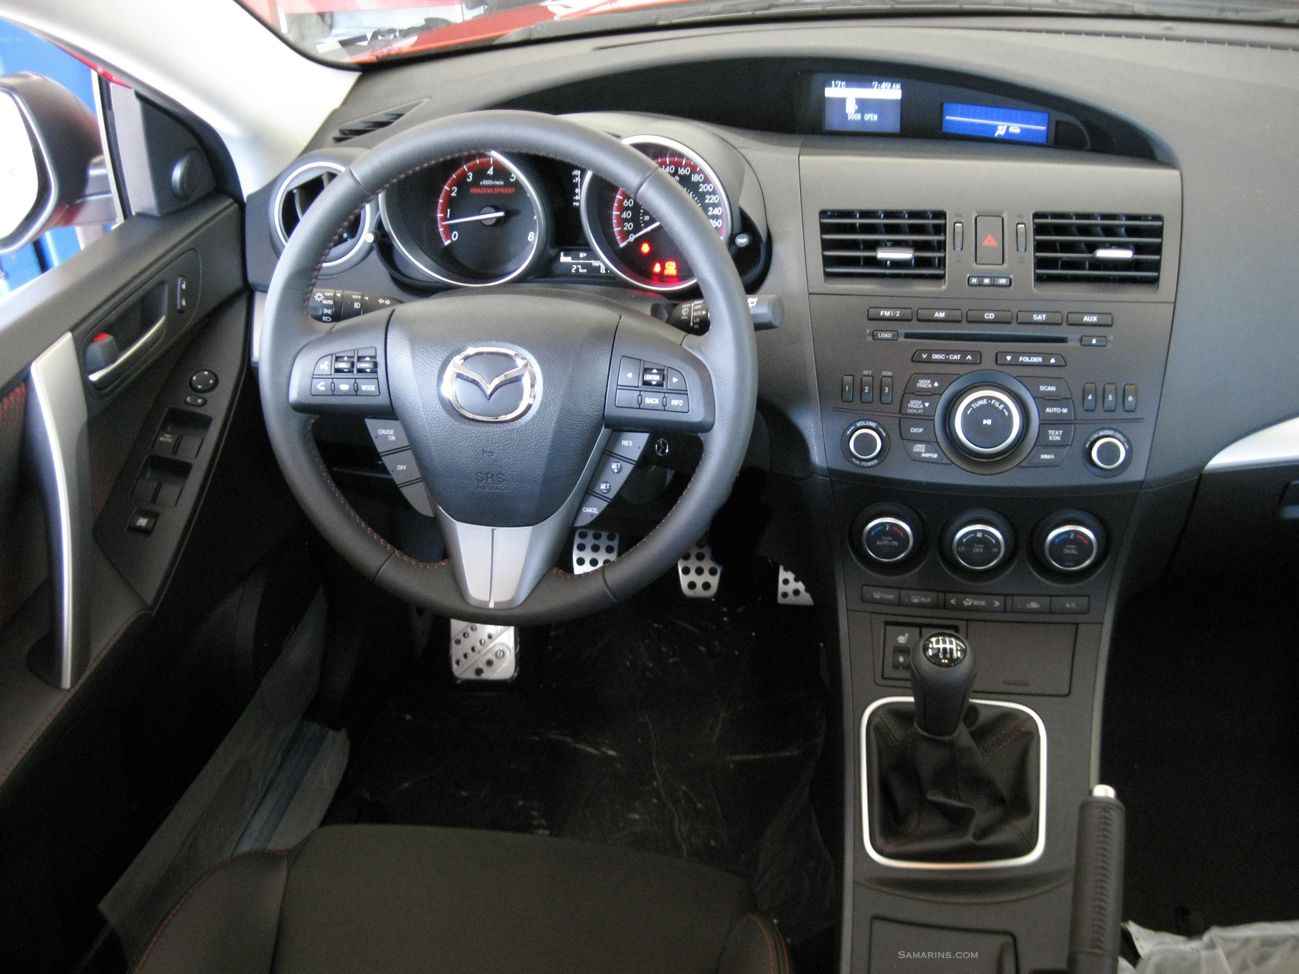 Mazdaspeed3 interior | Mazda mx5, Mazda 3, Mazda